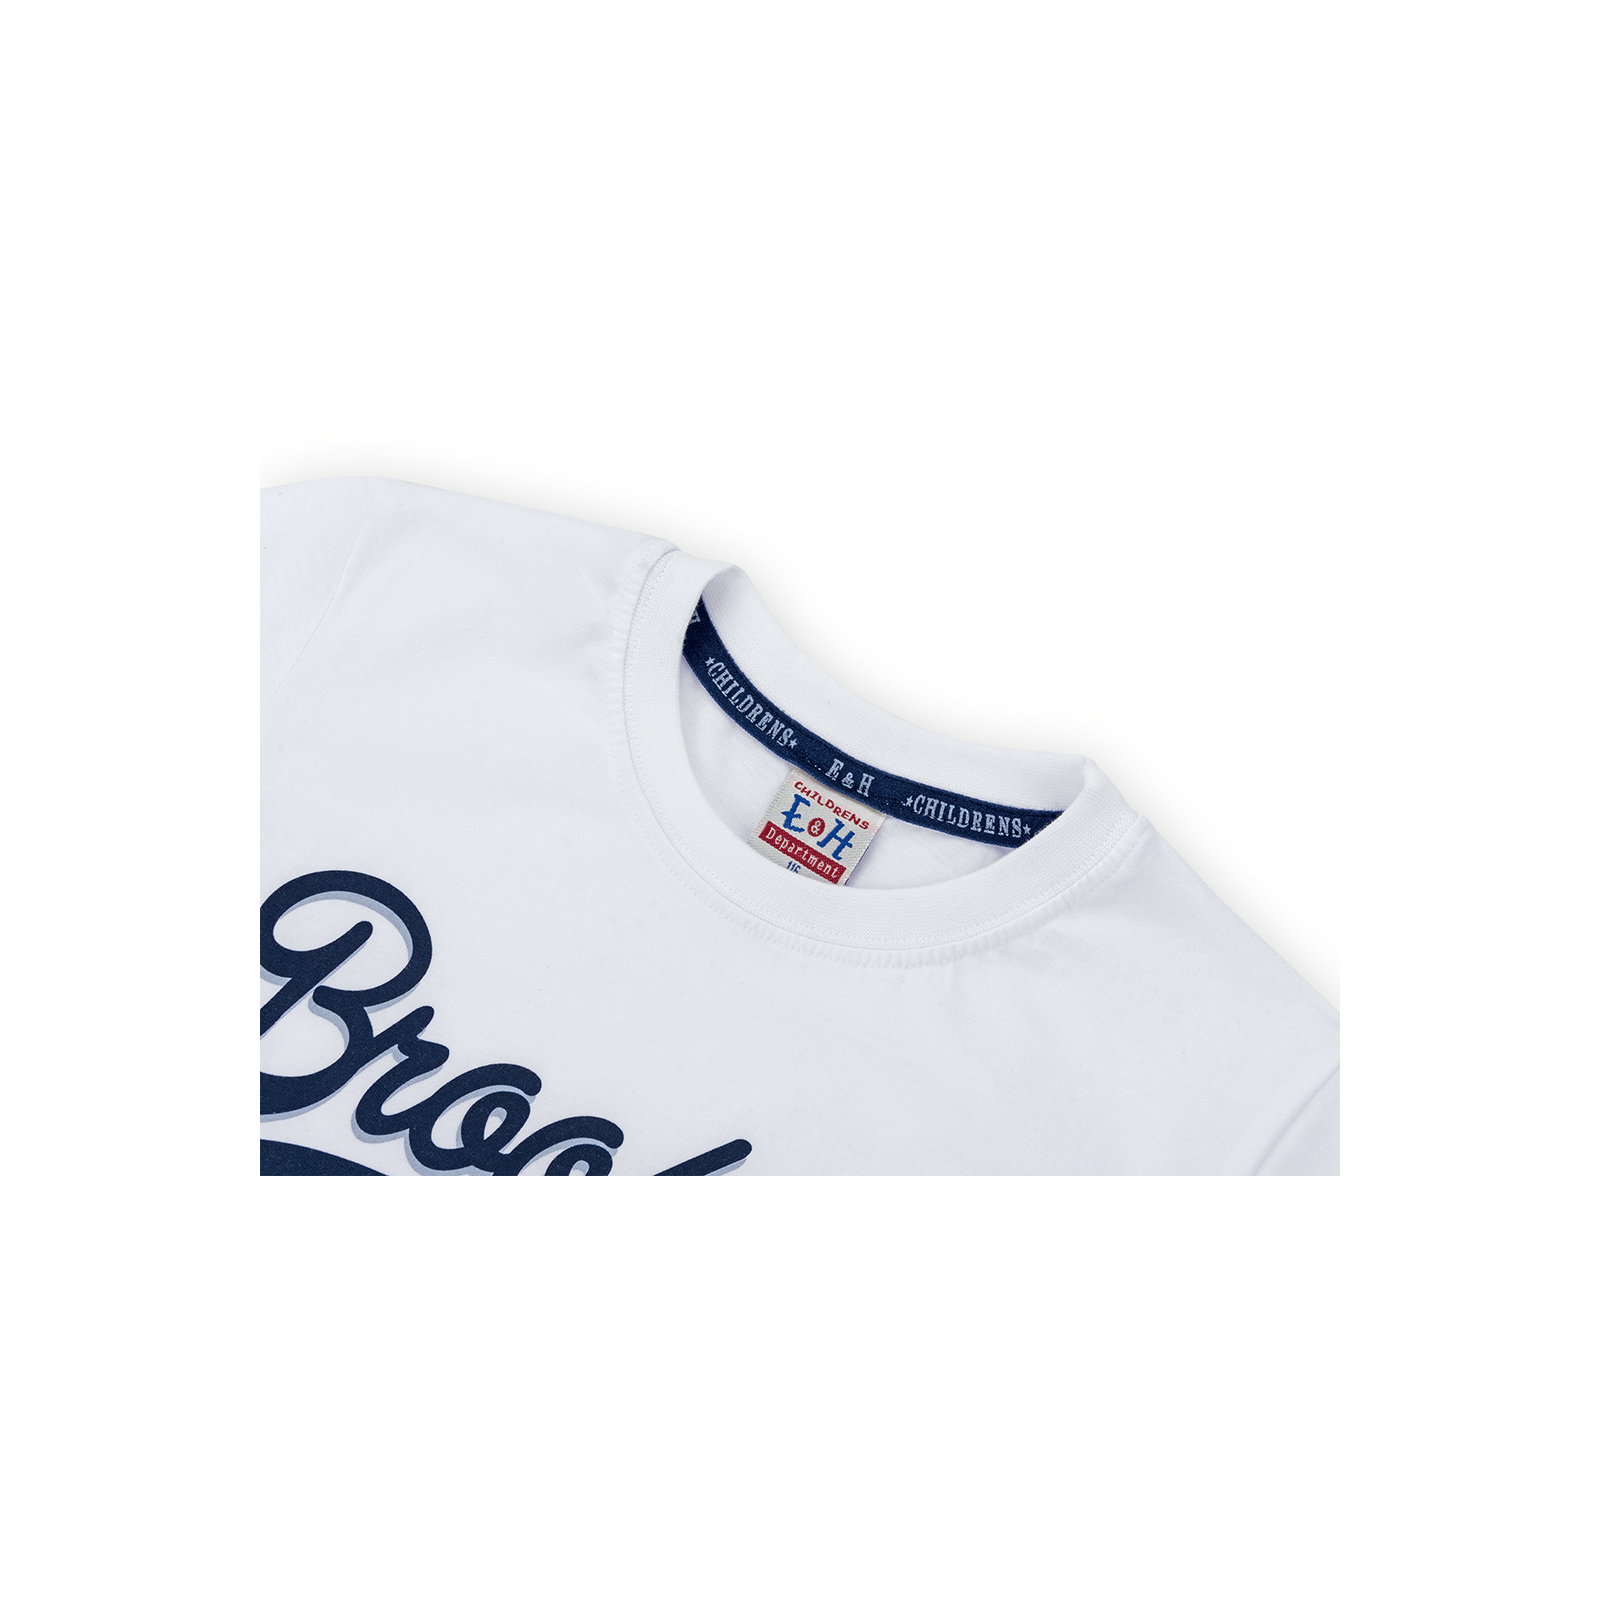 Набор детской одежды Breeze футболка "Brooklyn ATH" с шортами (8932-140B-white) изображение 4